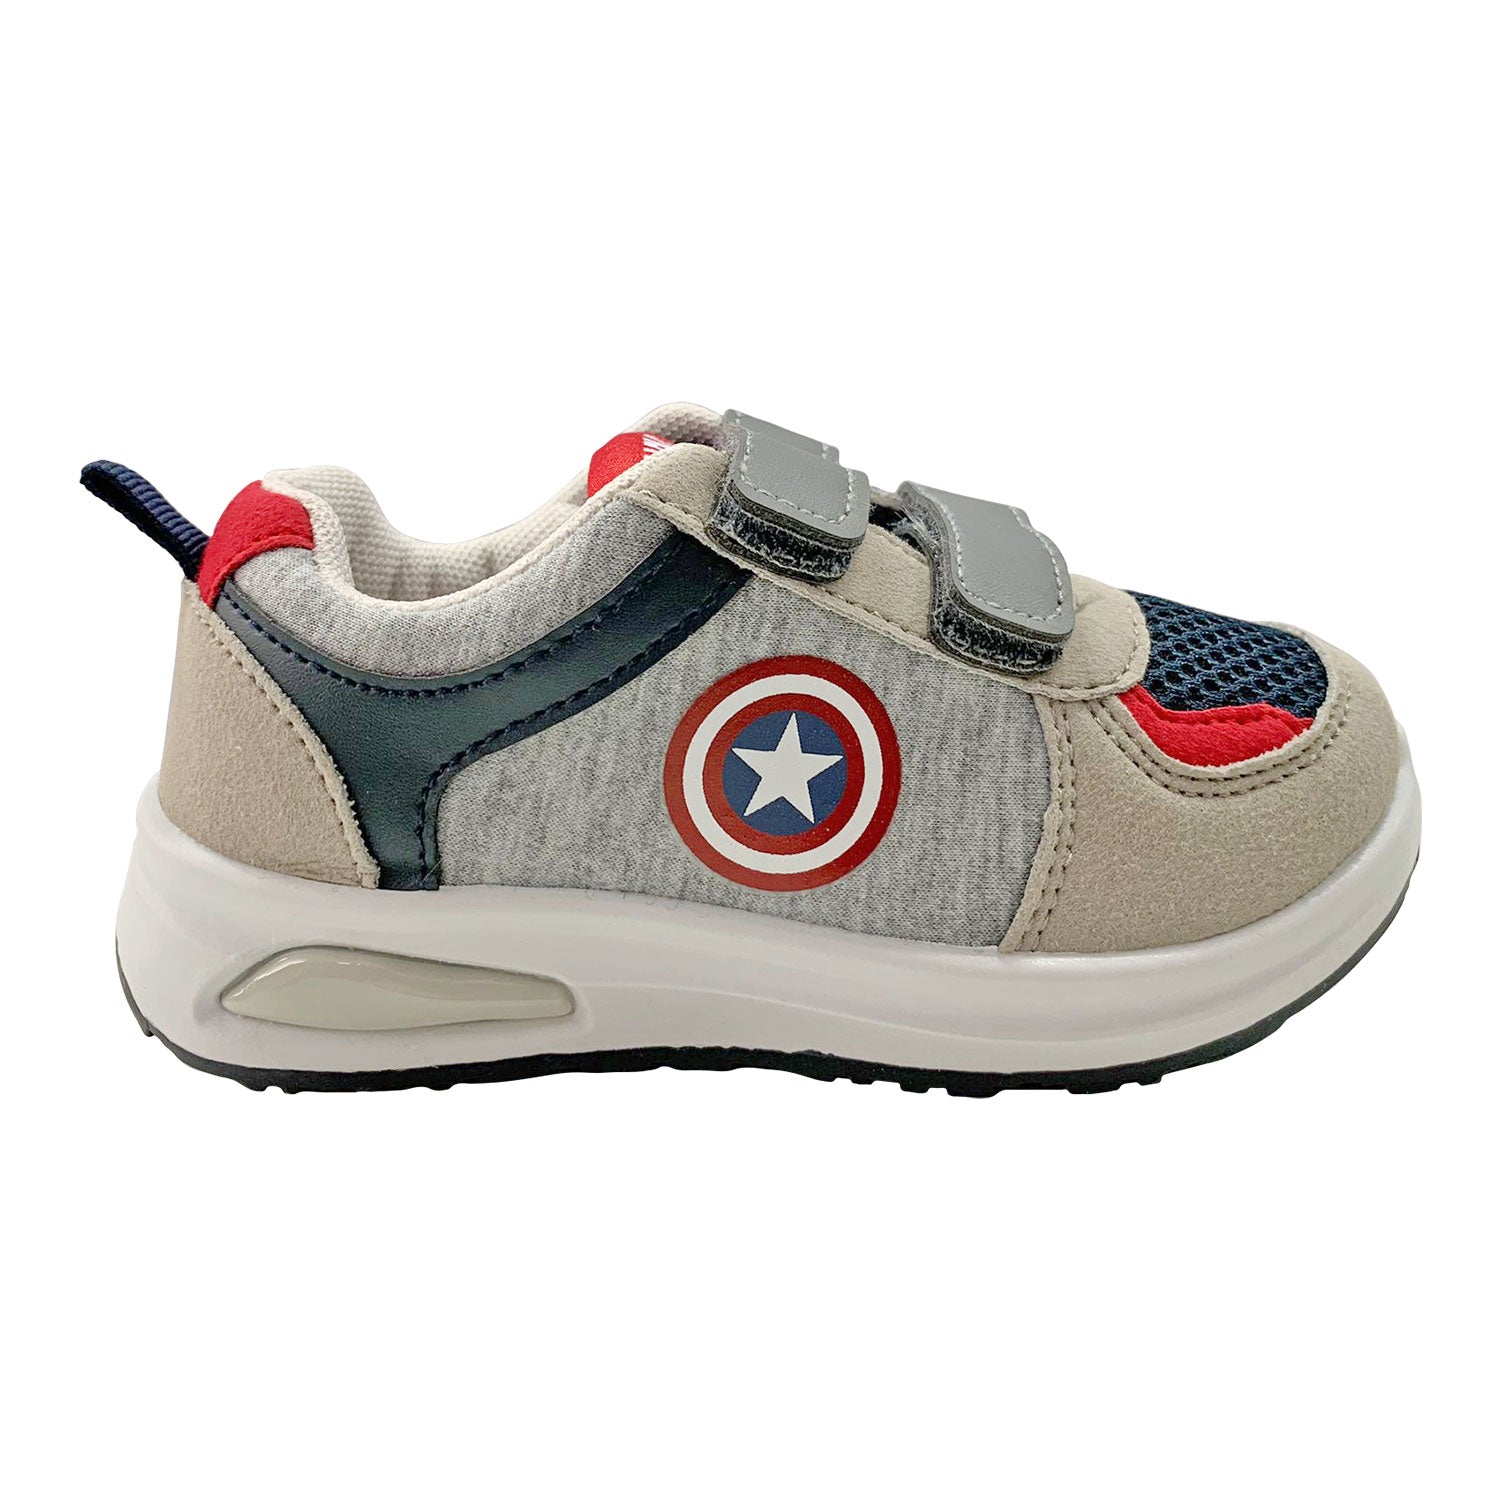 Scarpe Marvel Capitan America sneakers a strappo bambino con luci led 4997